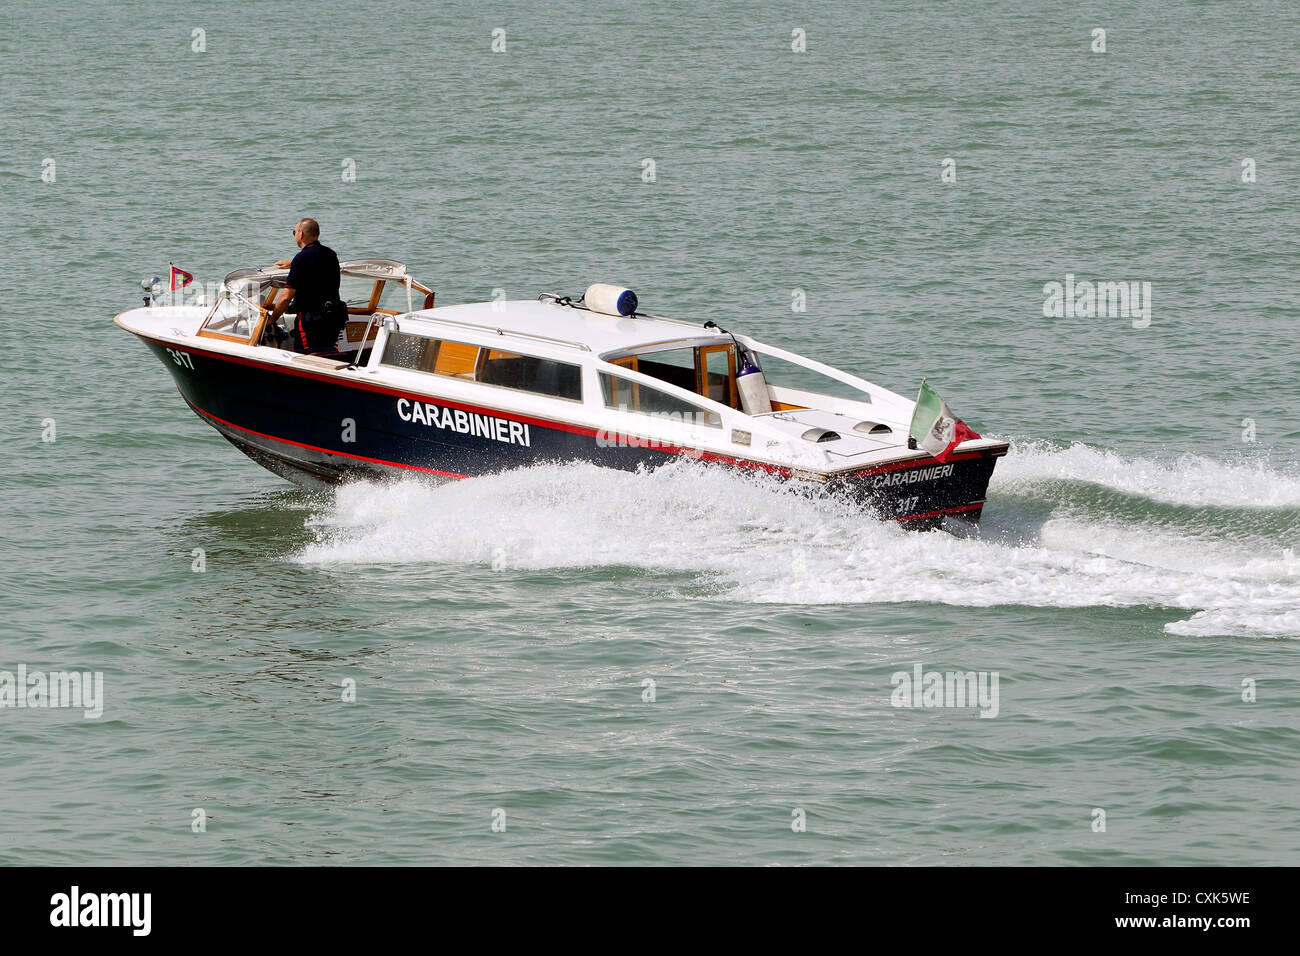 Italienische Polizei (Carabinieri) Boot in Lido von Venedig, Italien Stockfoto